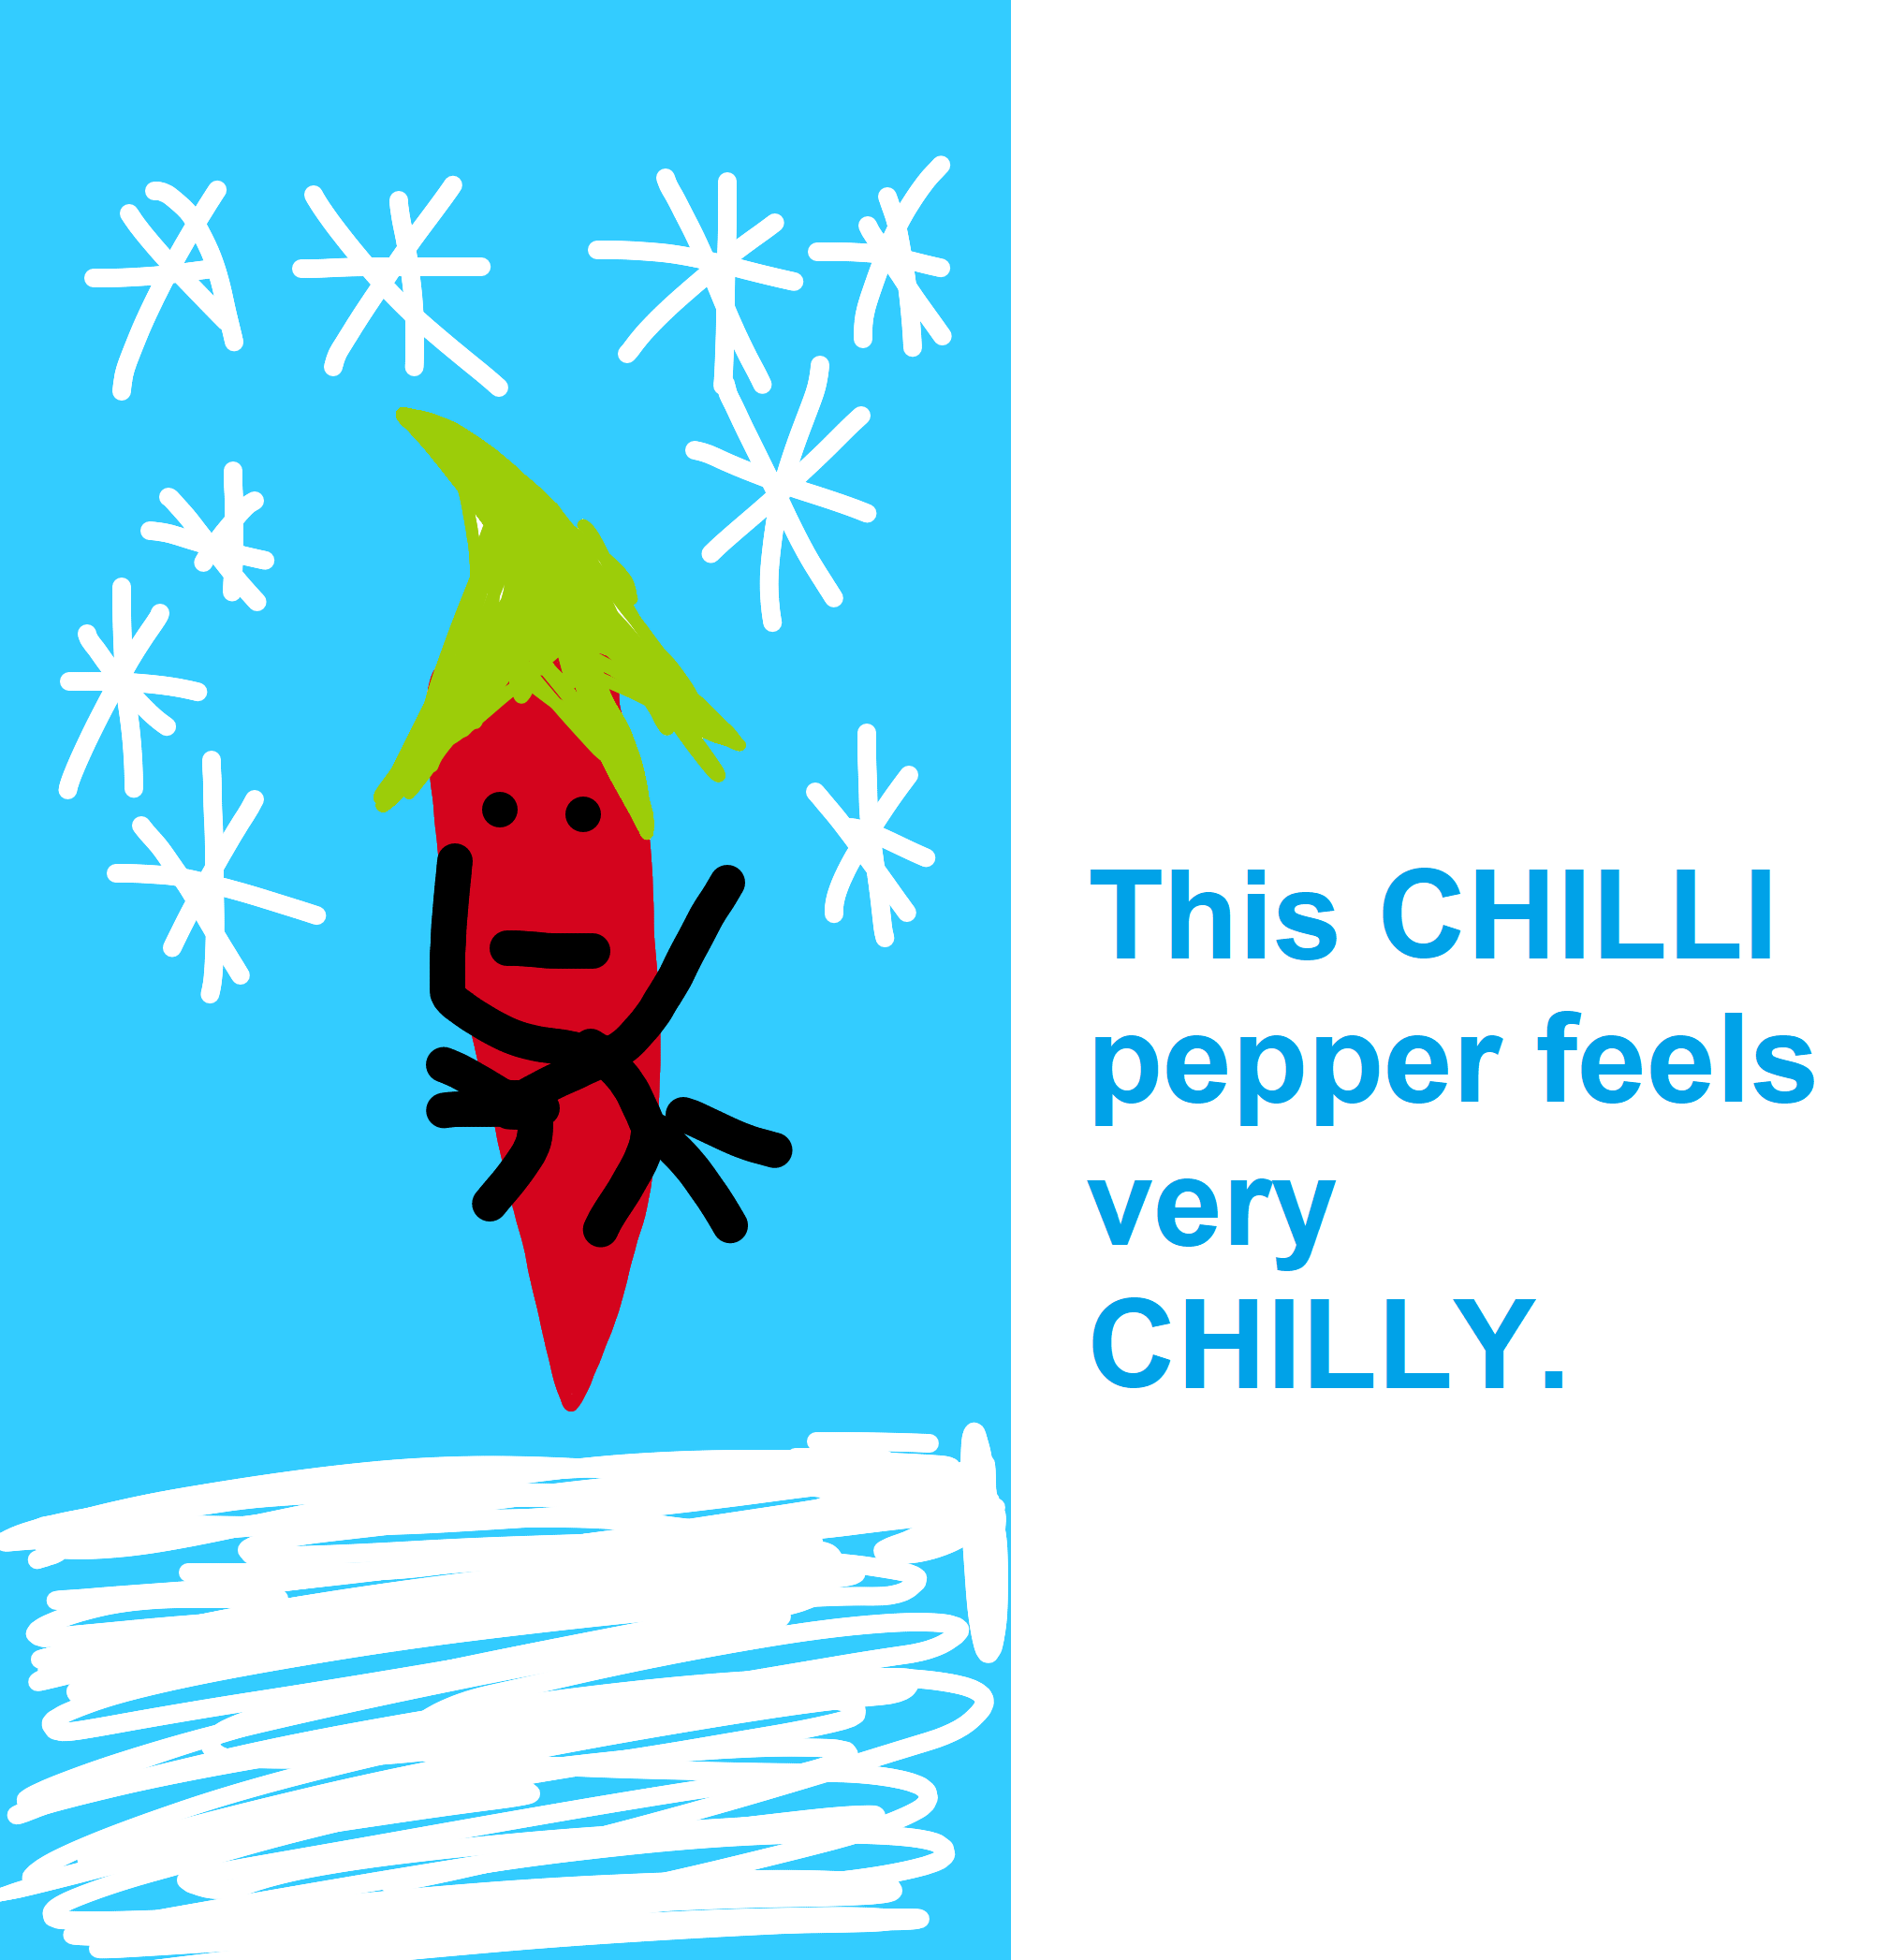 chilly - zimy, chłodny